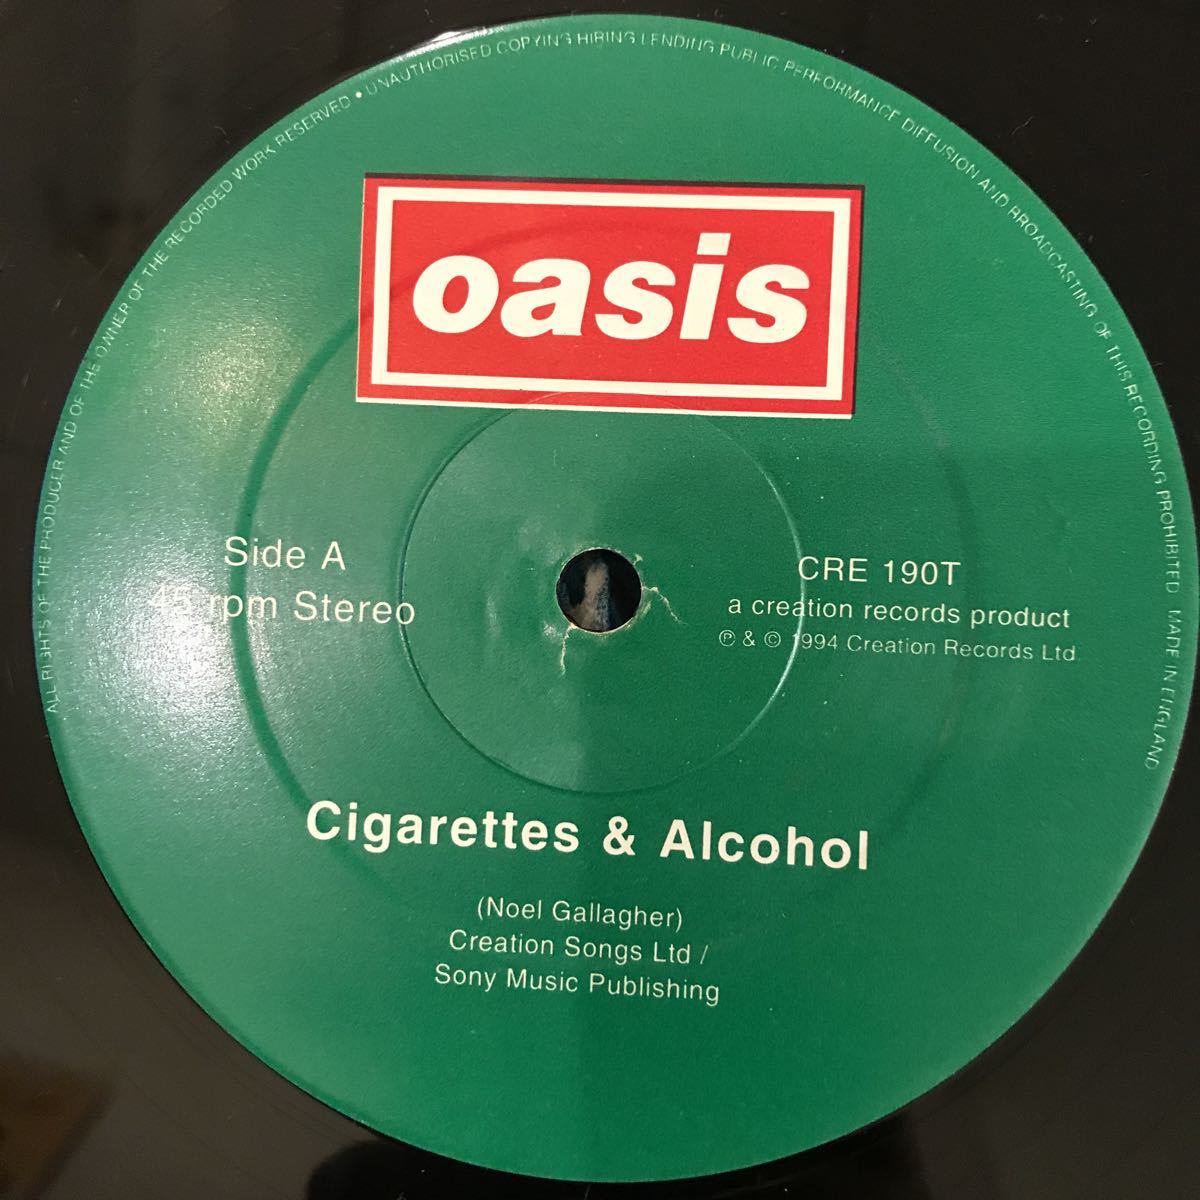 12inch OASIS / Cigarettes & Alcohol / CRE 190T / UK оригинал запись / 5 листов и больше бесплатная доставка 